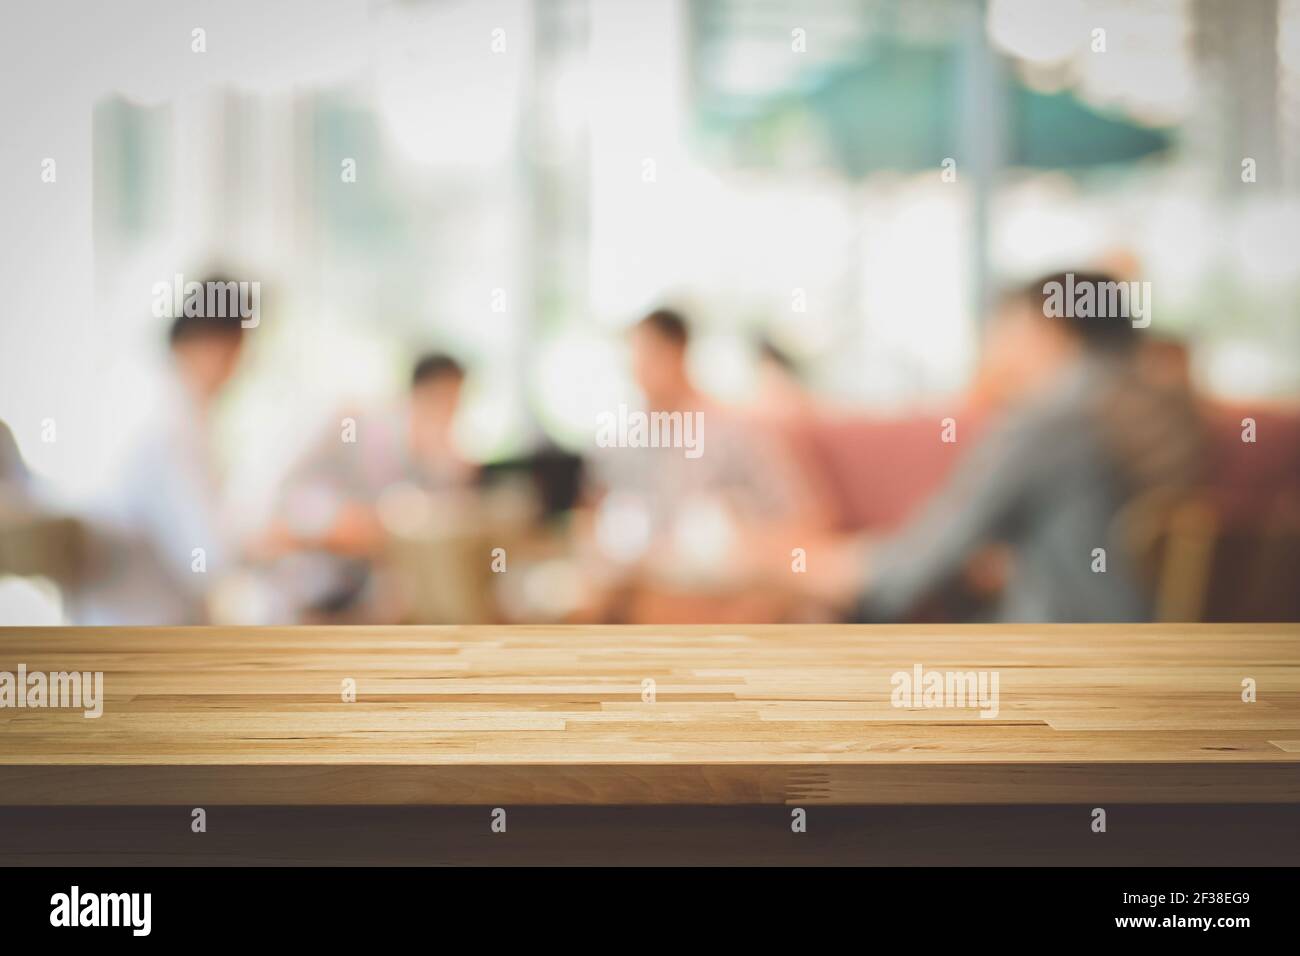 Plan de table en bois sur fond flou des gens dans le café, lomo et effets de ton vintage - peut être utilisé pour l'affichage ou le montage de vos produits Banque D'Images